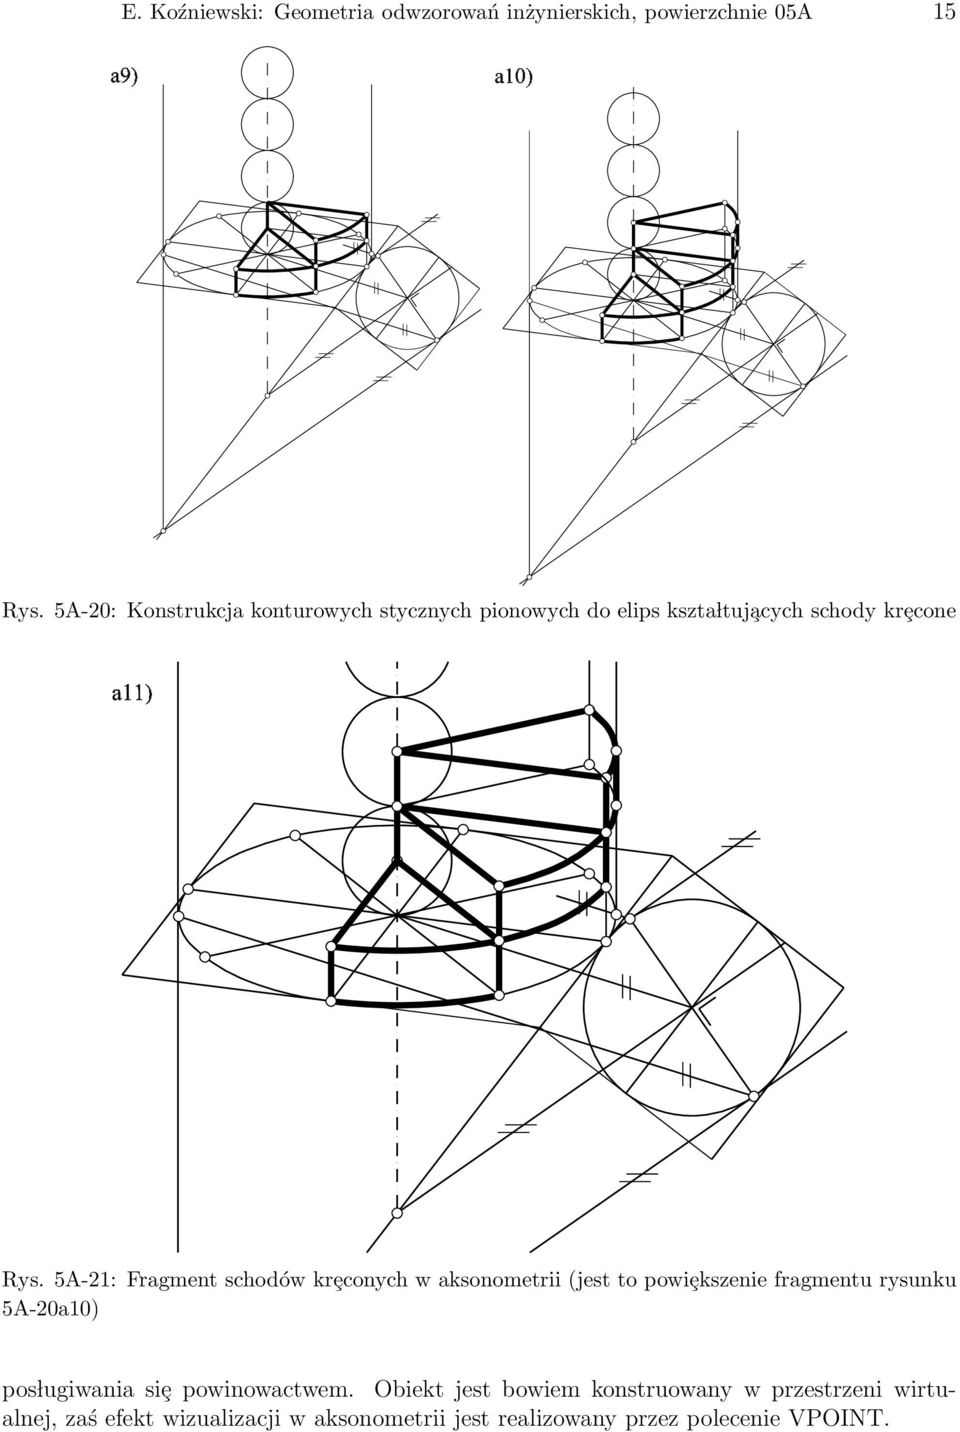 5A-21: Fragment schodów krȩconych w aksonometrii (jest to powiȩkszenie fragmentu rysunku 5A-20a10) pos